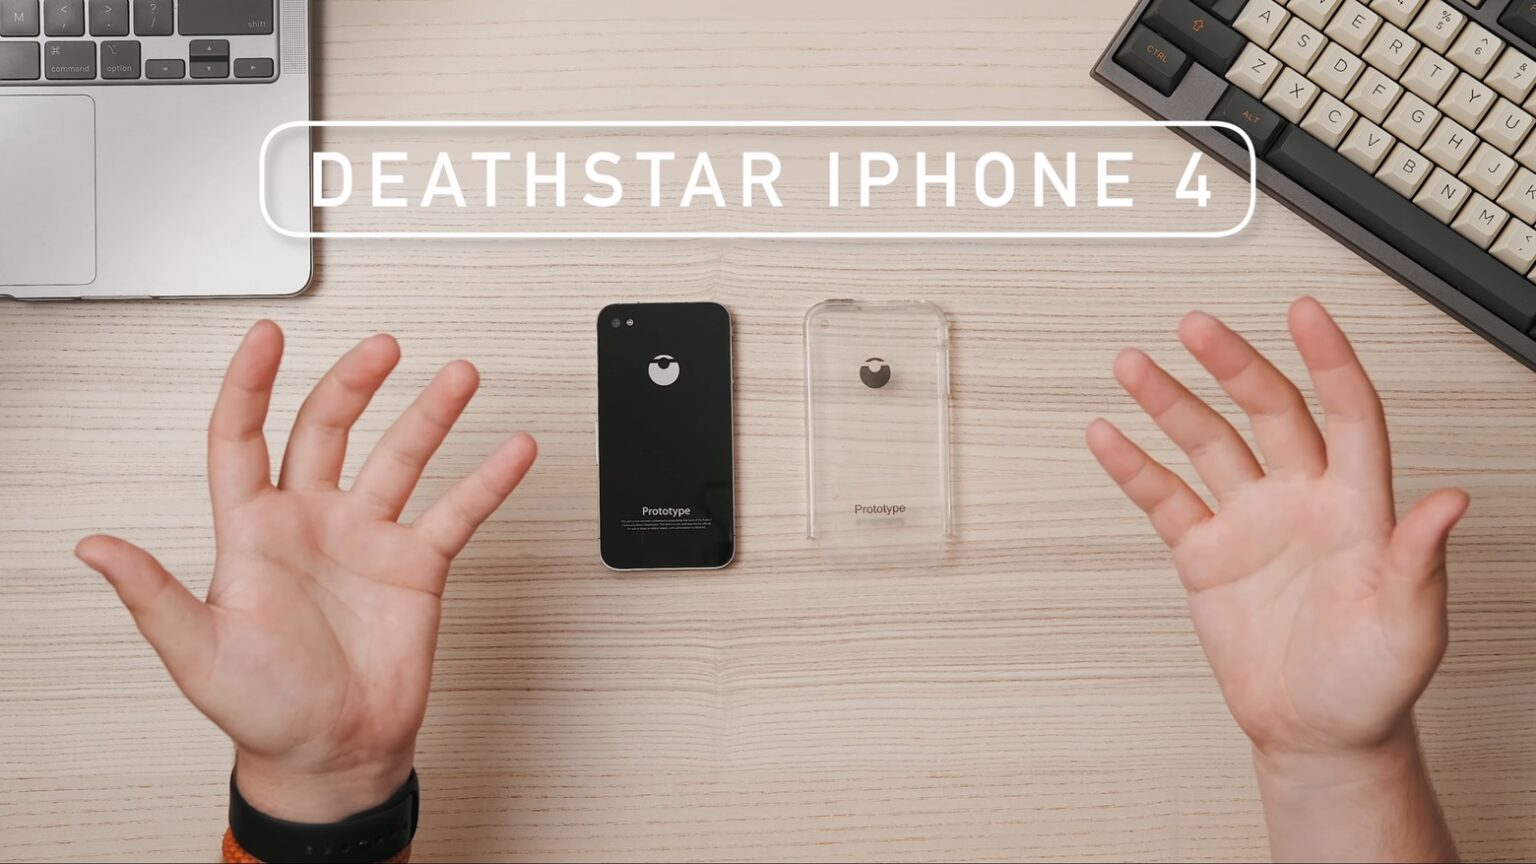 Blast off to explore amazing ‘Death Star’ iPhone prototype